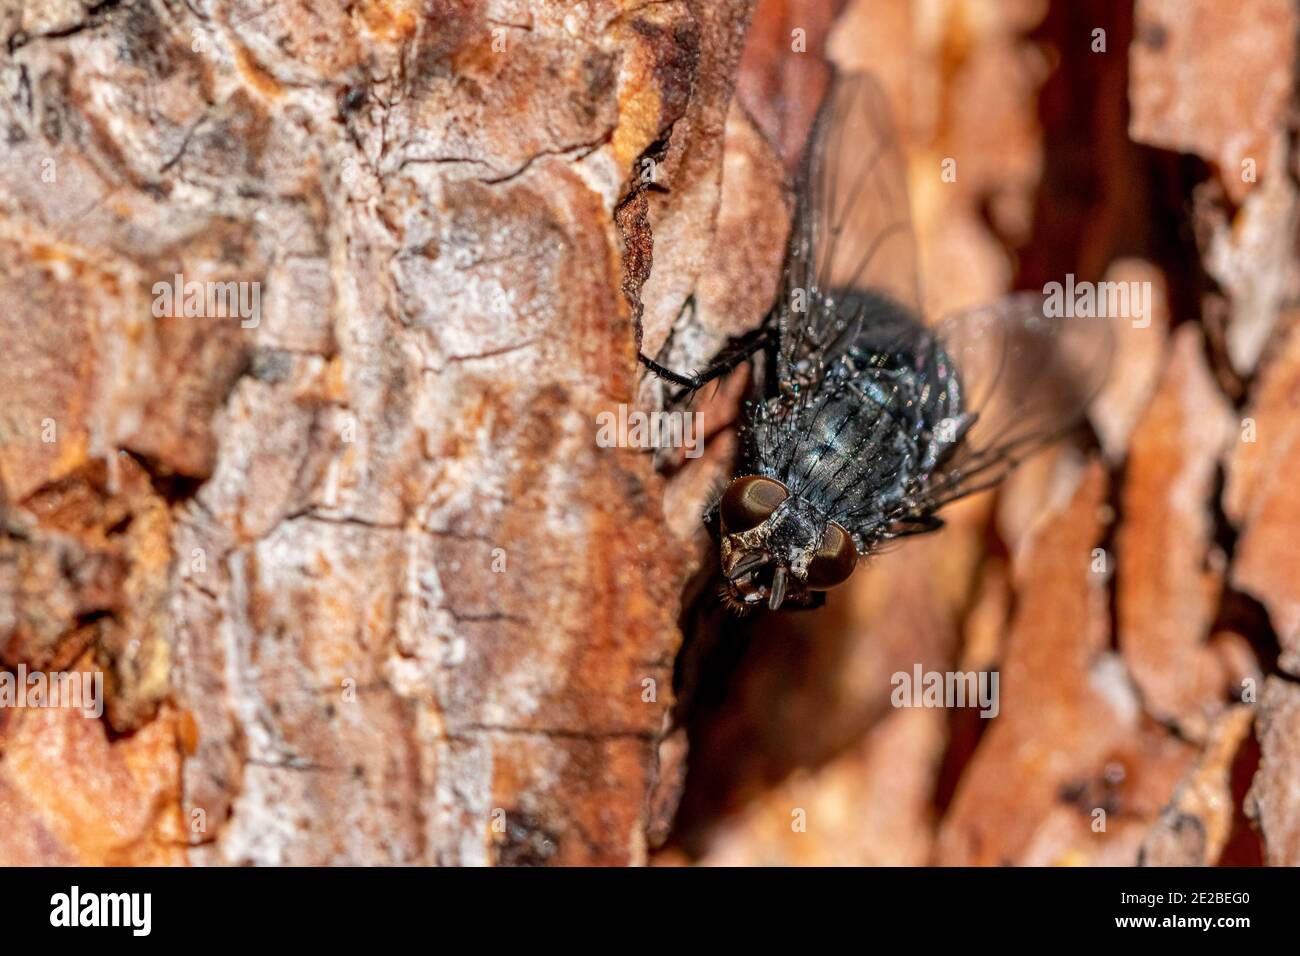 Mosca negra en un pino de espalda Foto de stock